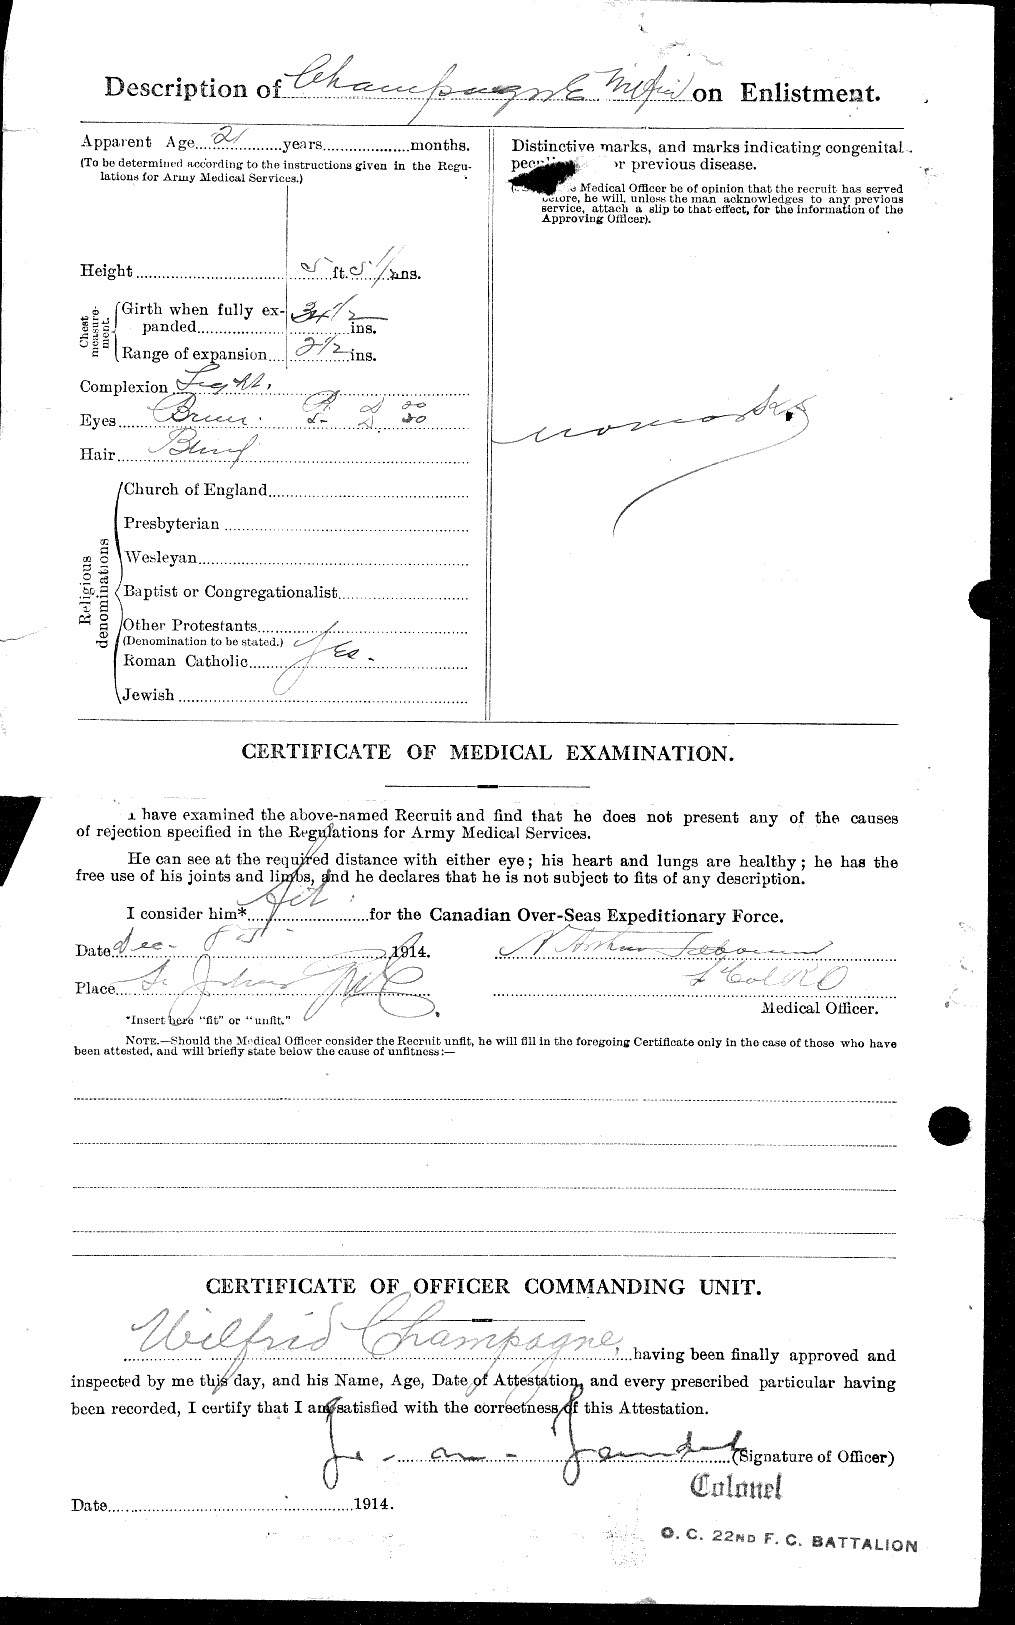 Dossiers du Personnel de la Première Guerre mondiale - CEC 019768b